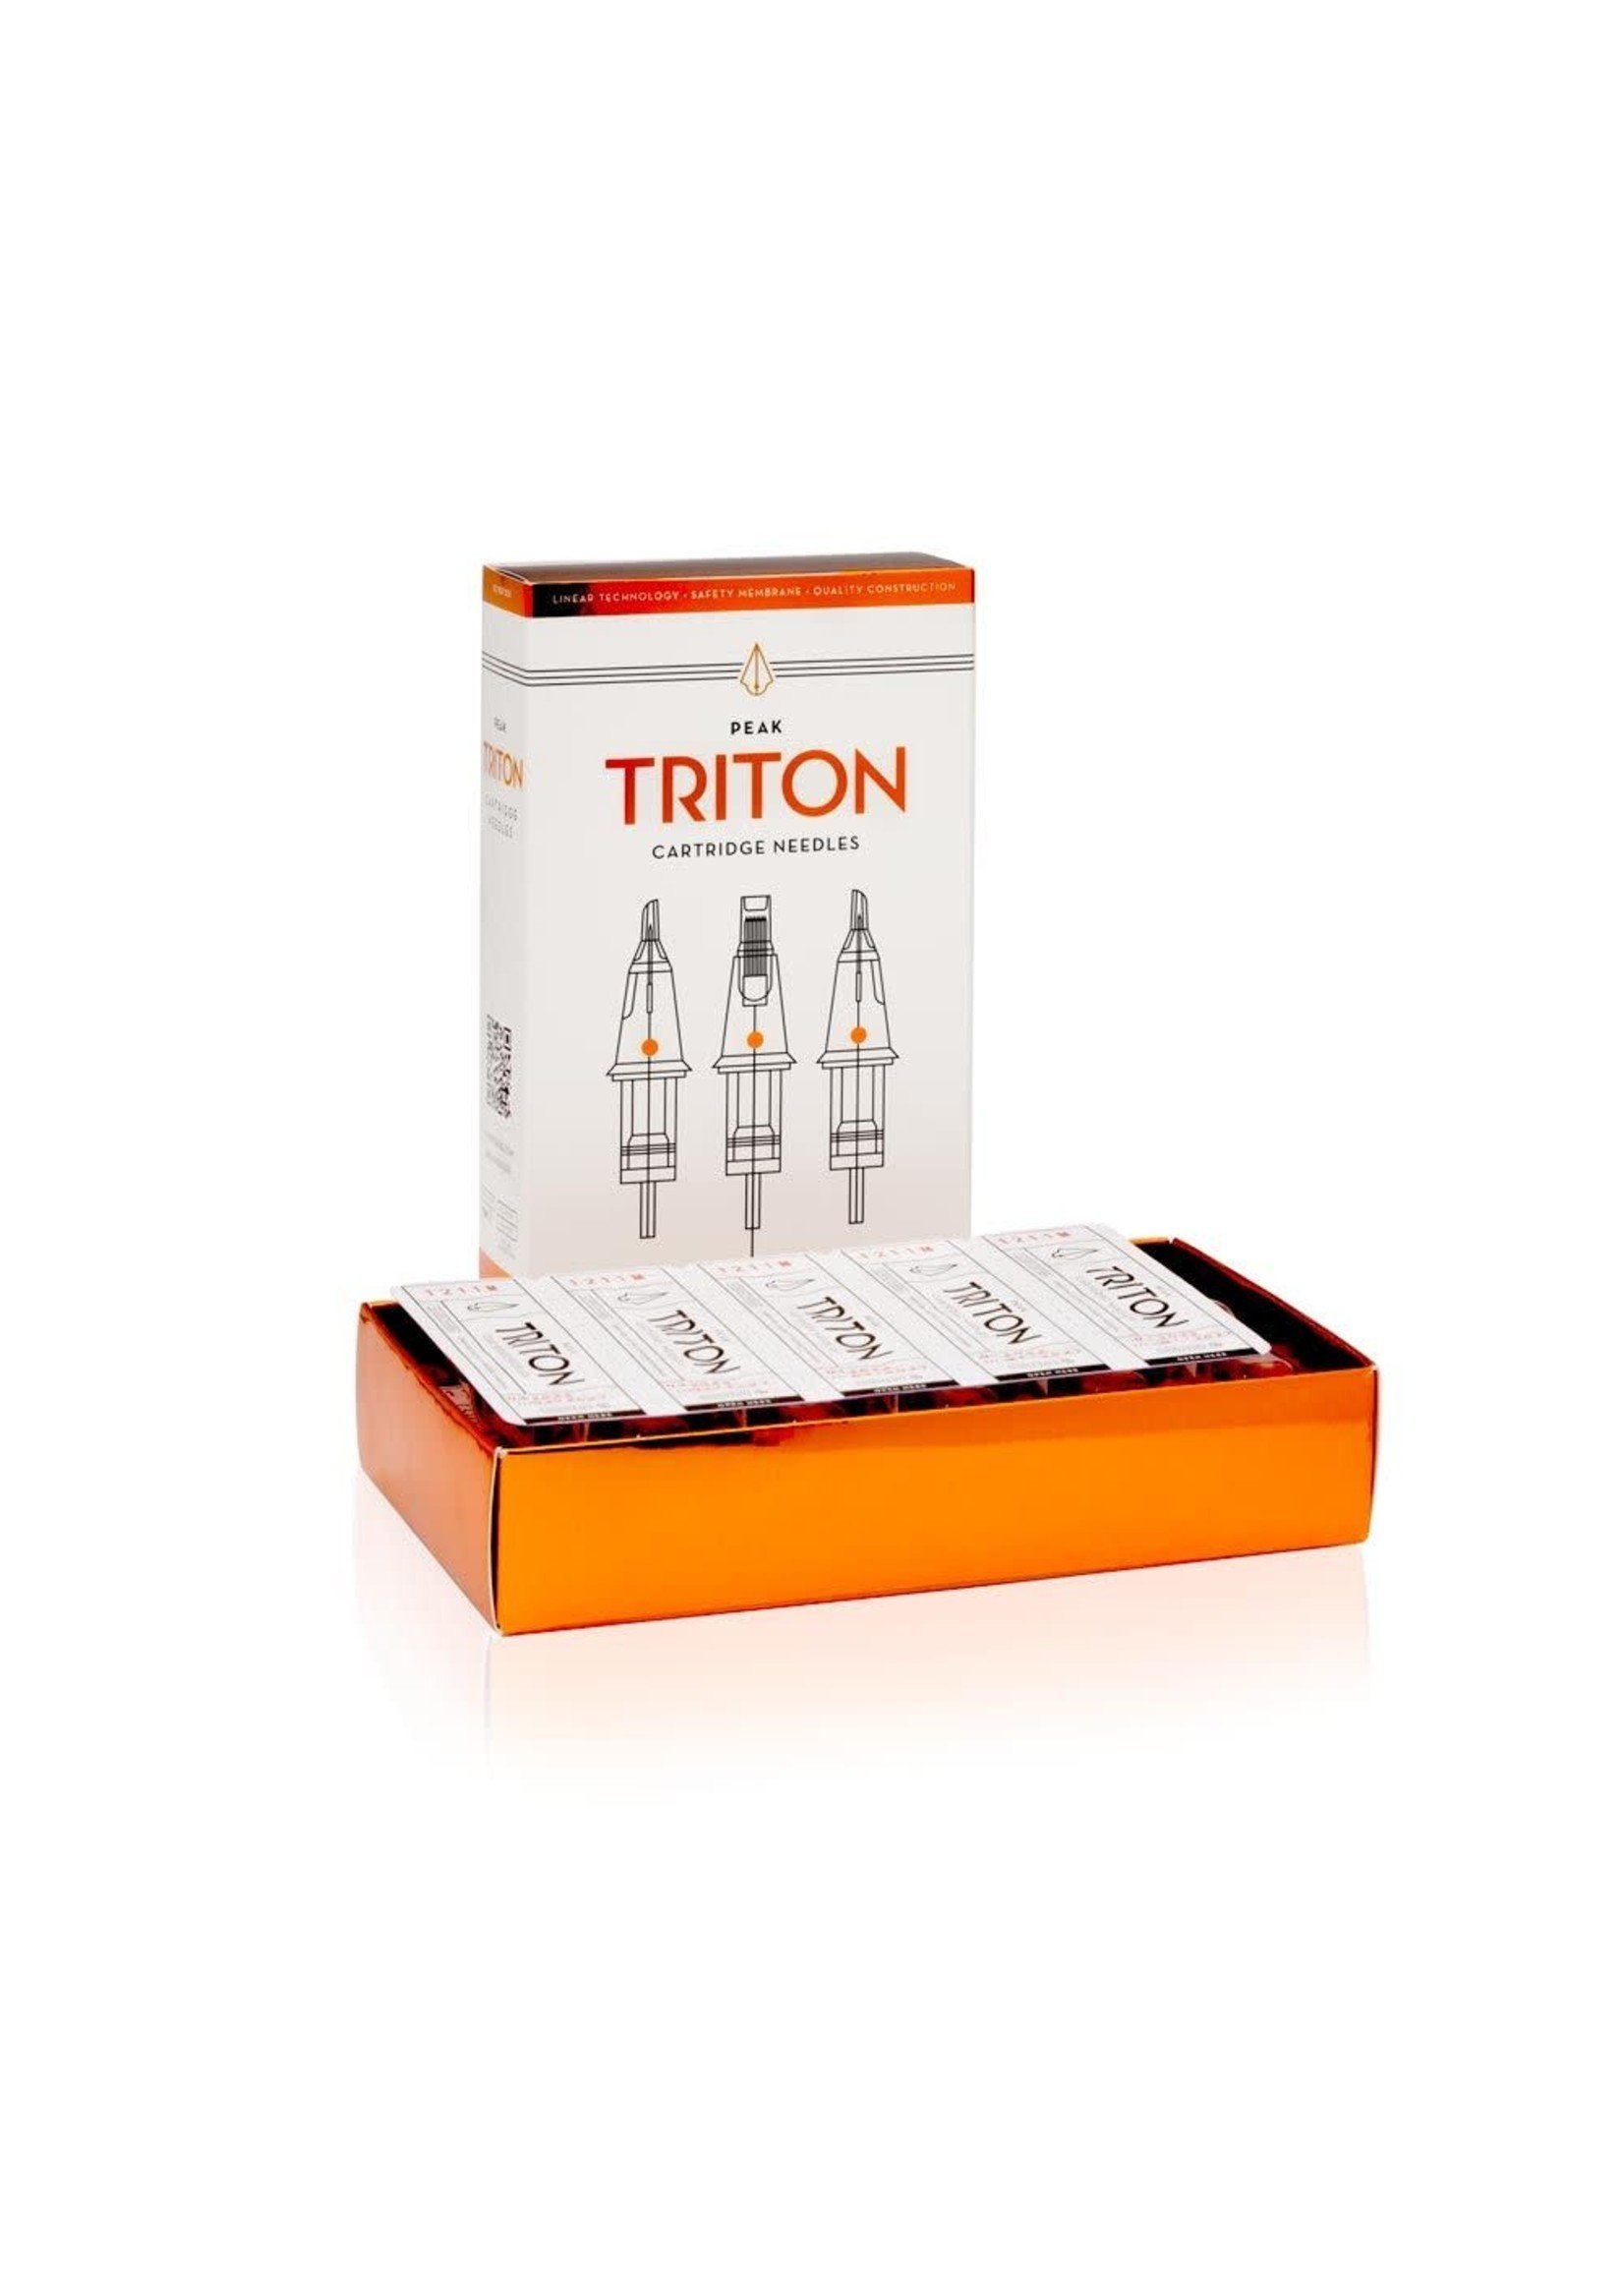 Peak Triton Cartridge Needles — 23 Curved Magnum Medium taper (20)